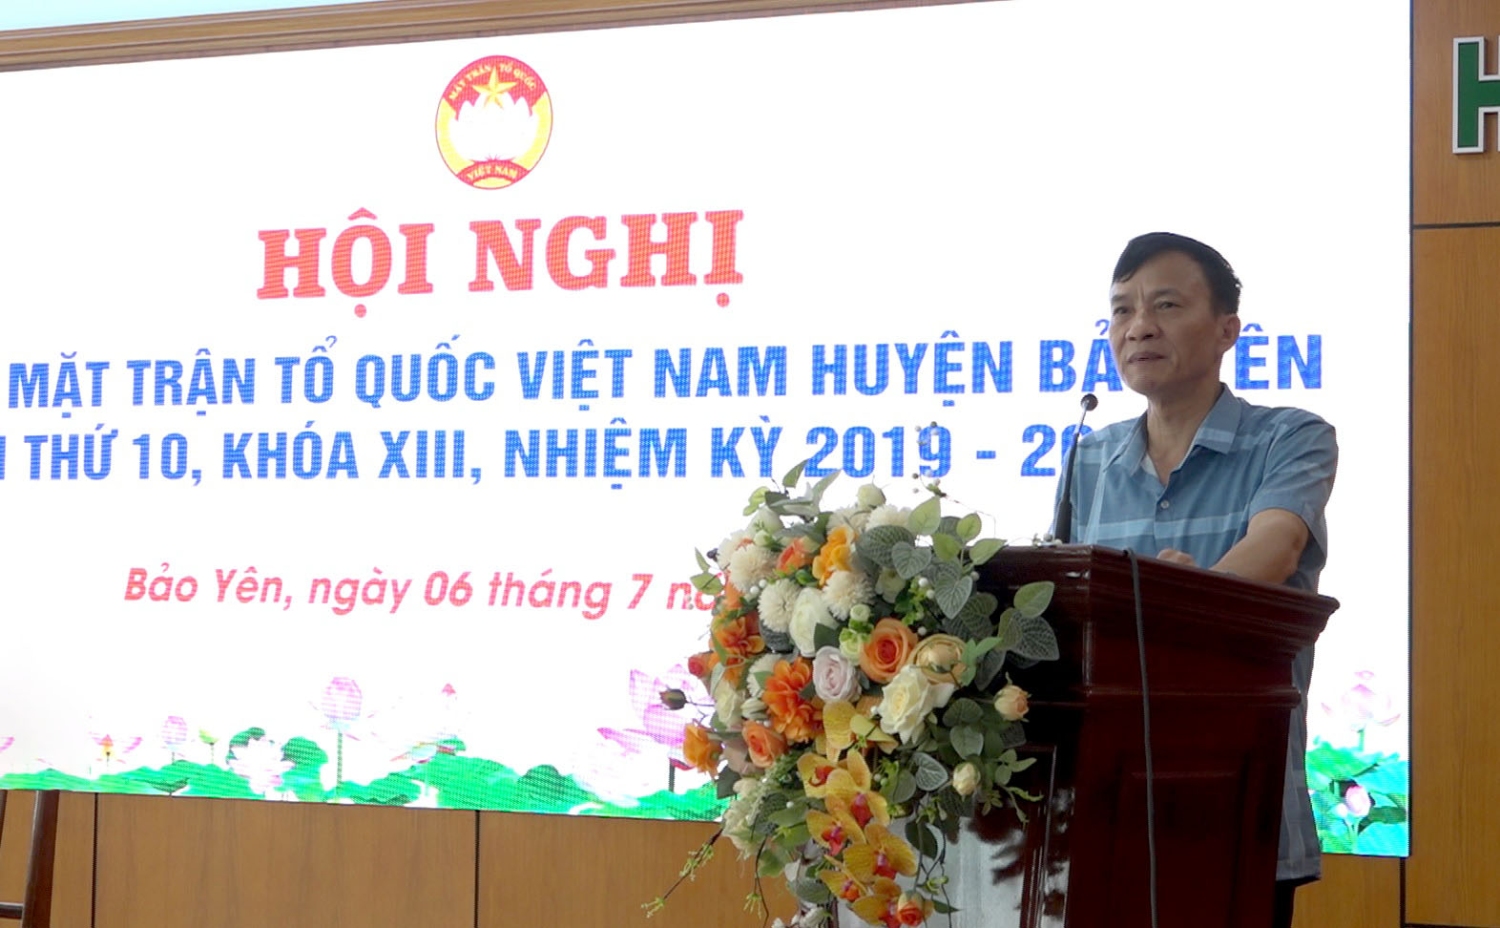 Phó Chủ tịch Ủy ban MTTQ Việt Nam tỉnh Lào Cai Nguyễn Văn Chiến phát biểu tại hội nghị